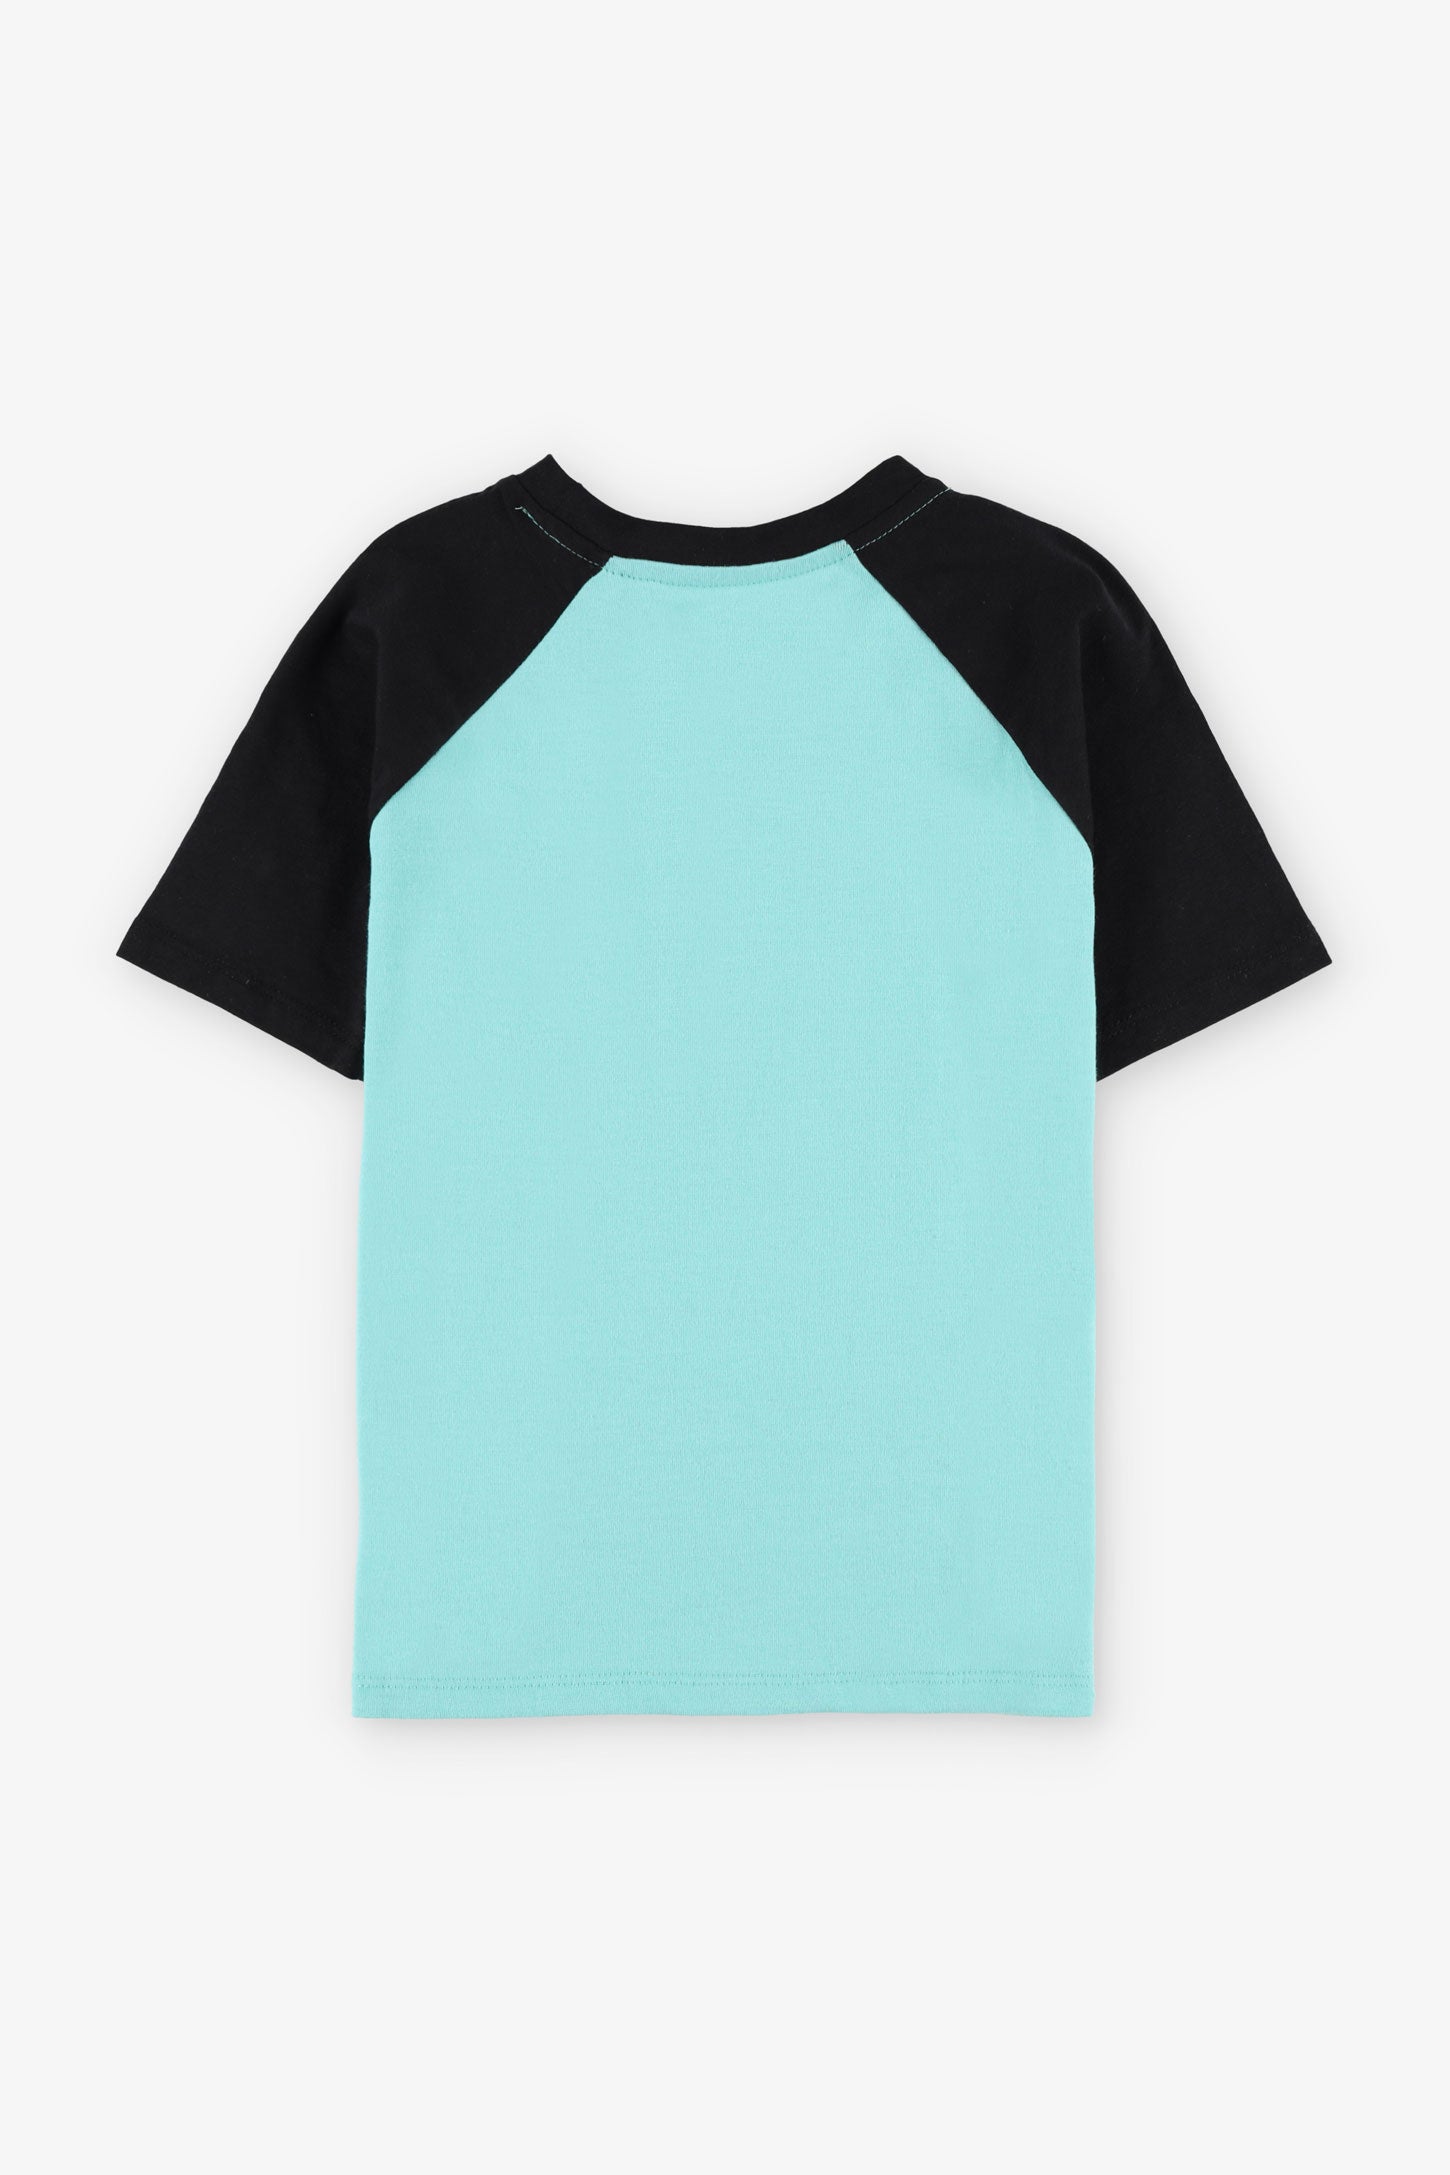 T-shirt col rond imprimé en coton, 2/20$ - Enfant garçon && TURQUOISE